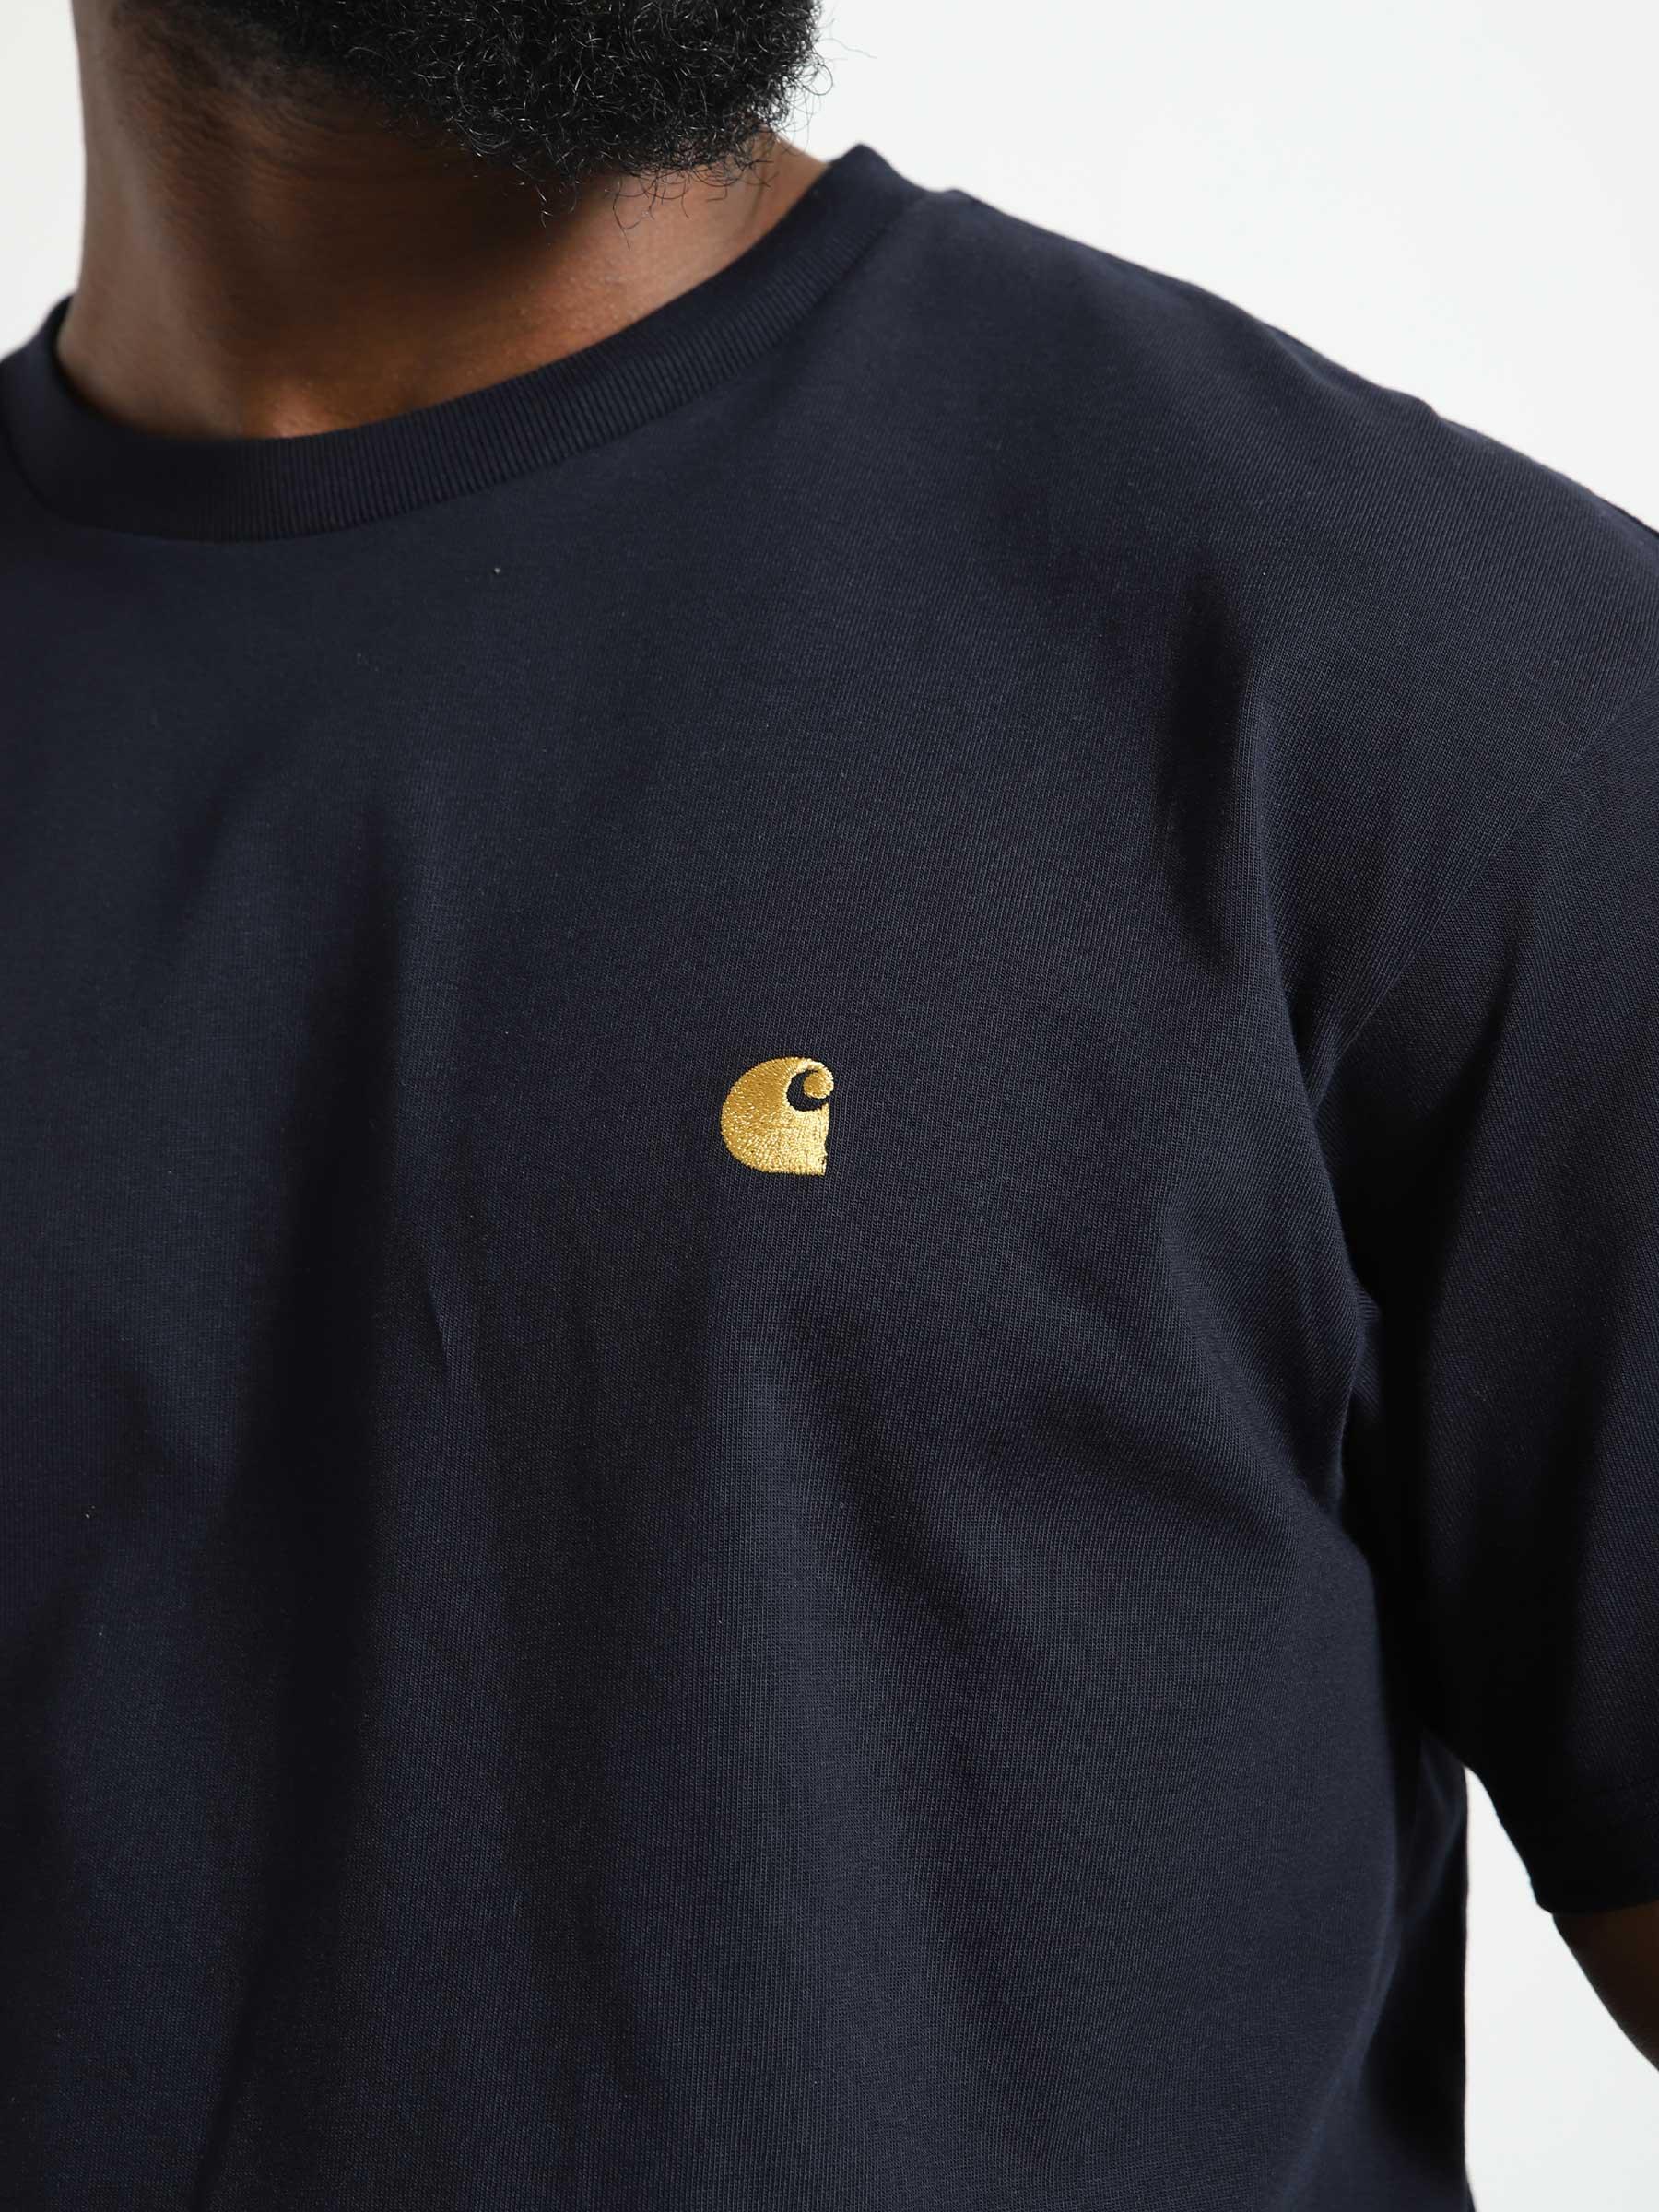 Chase T-Shirt Dark Navy Gold I026391